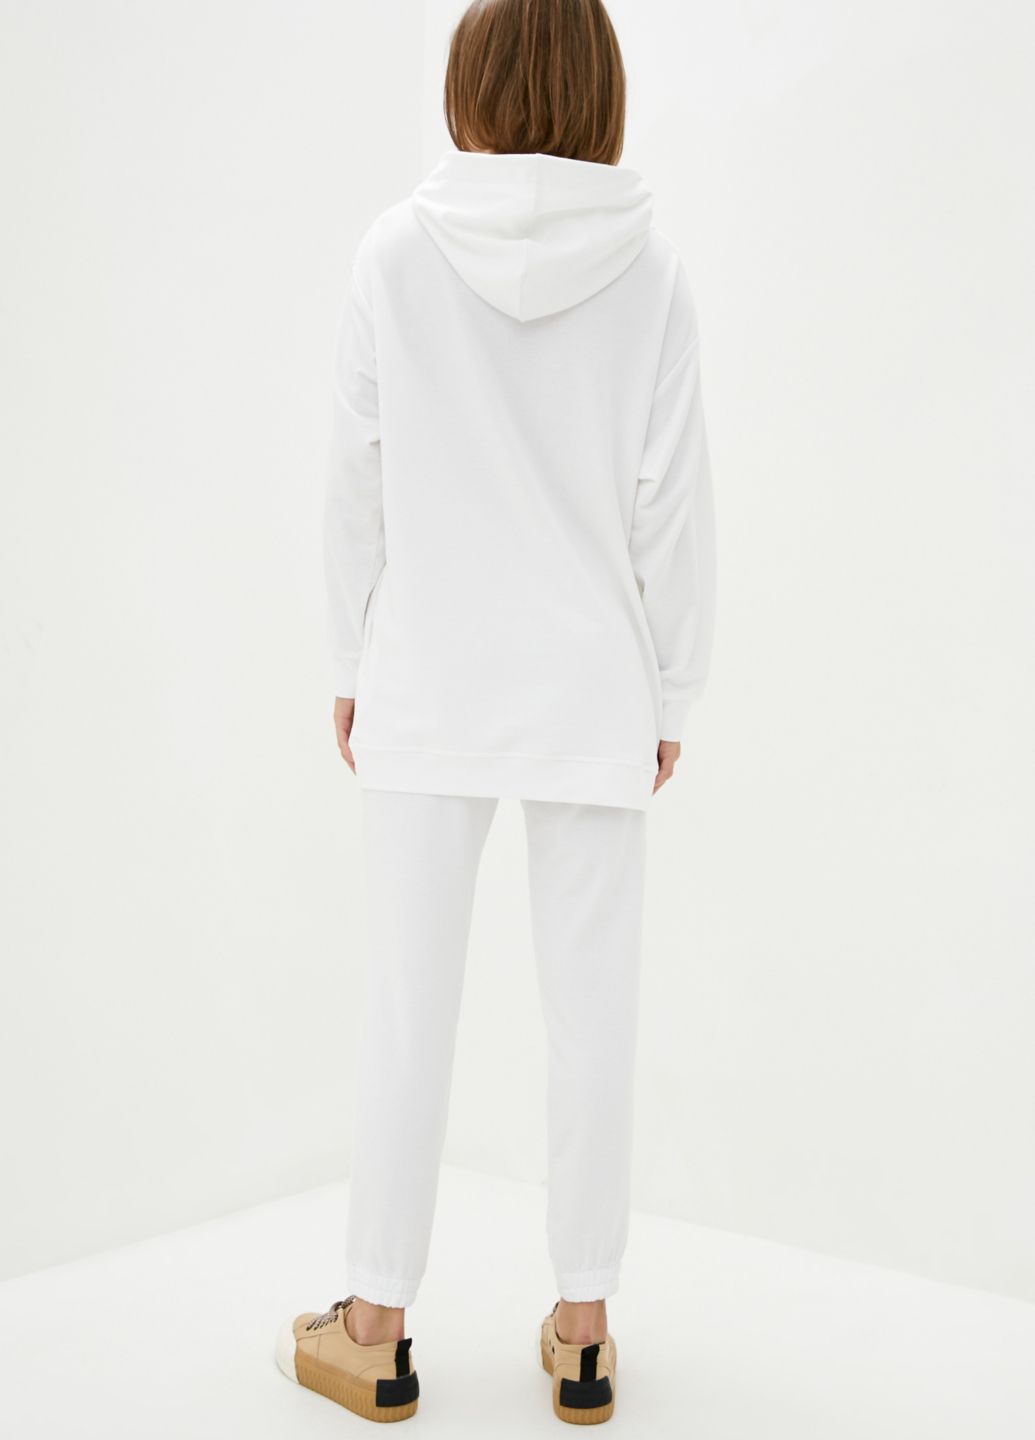 Купить Спортивные штаны женские Merlini Латина 600000013 - Белый, 46-48 в интернет-магазине